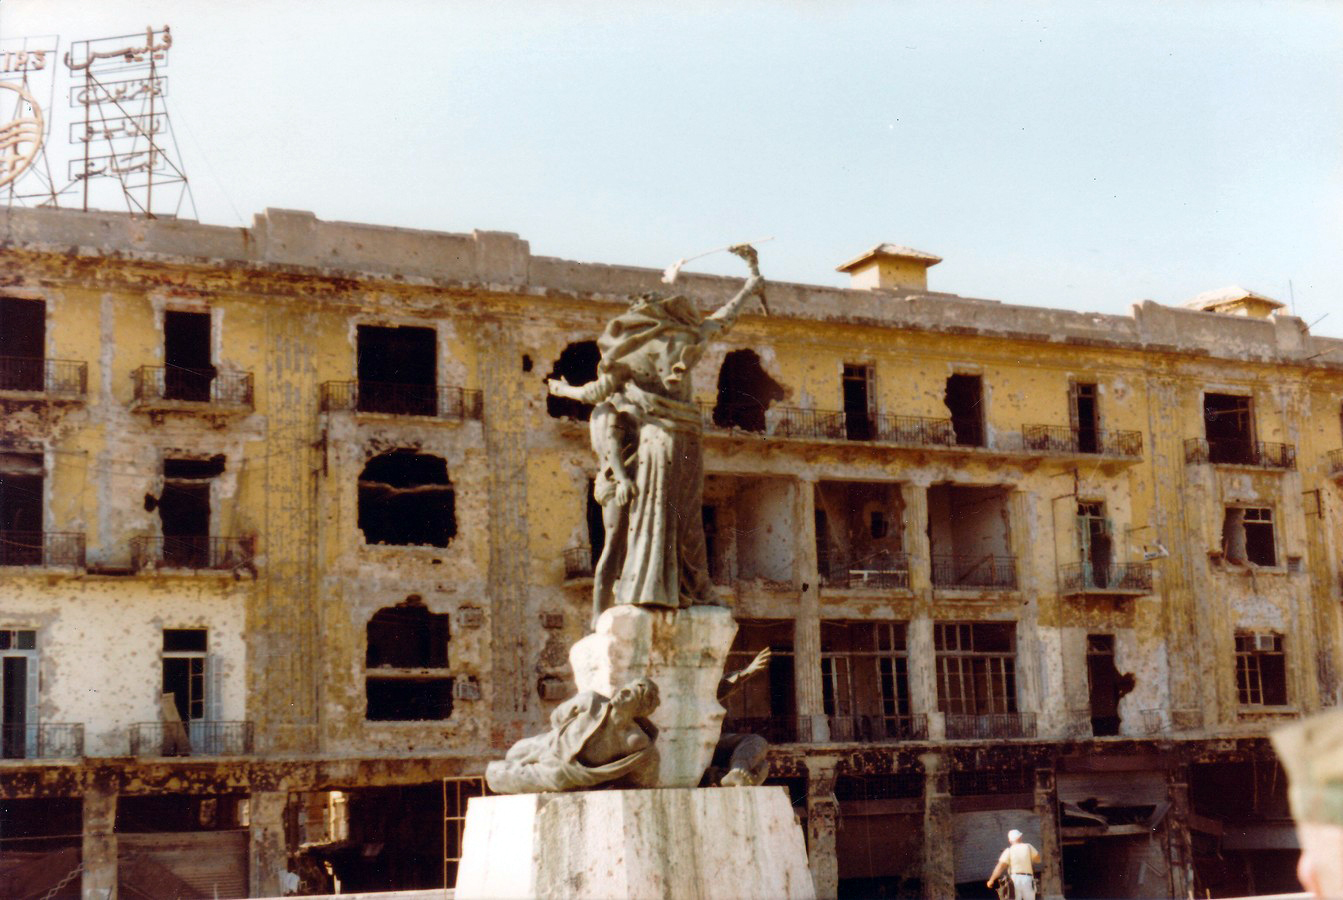 En statue i midten av et torg som er tydelig skadet av eksplosjoner.